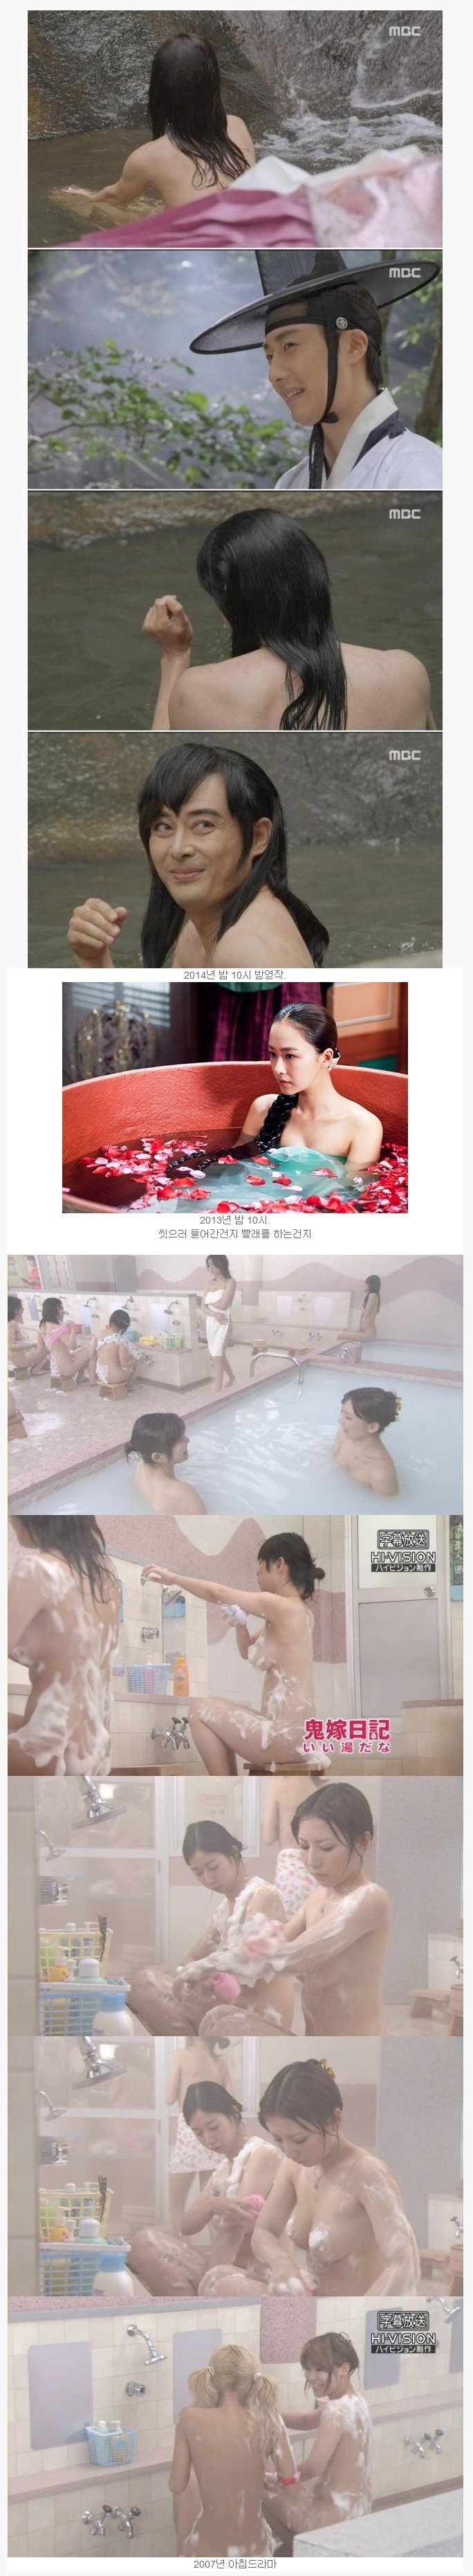 한국 일본 공주파 목욕신.jpg